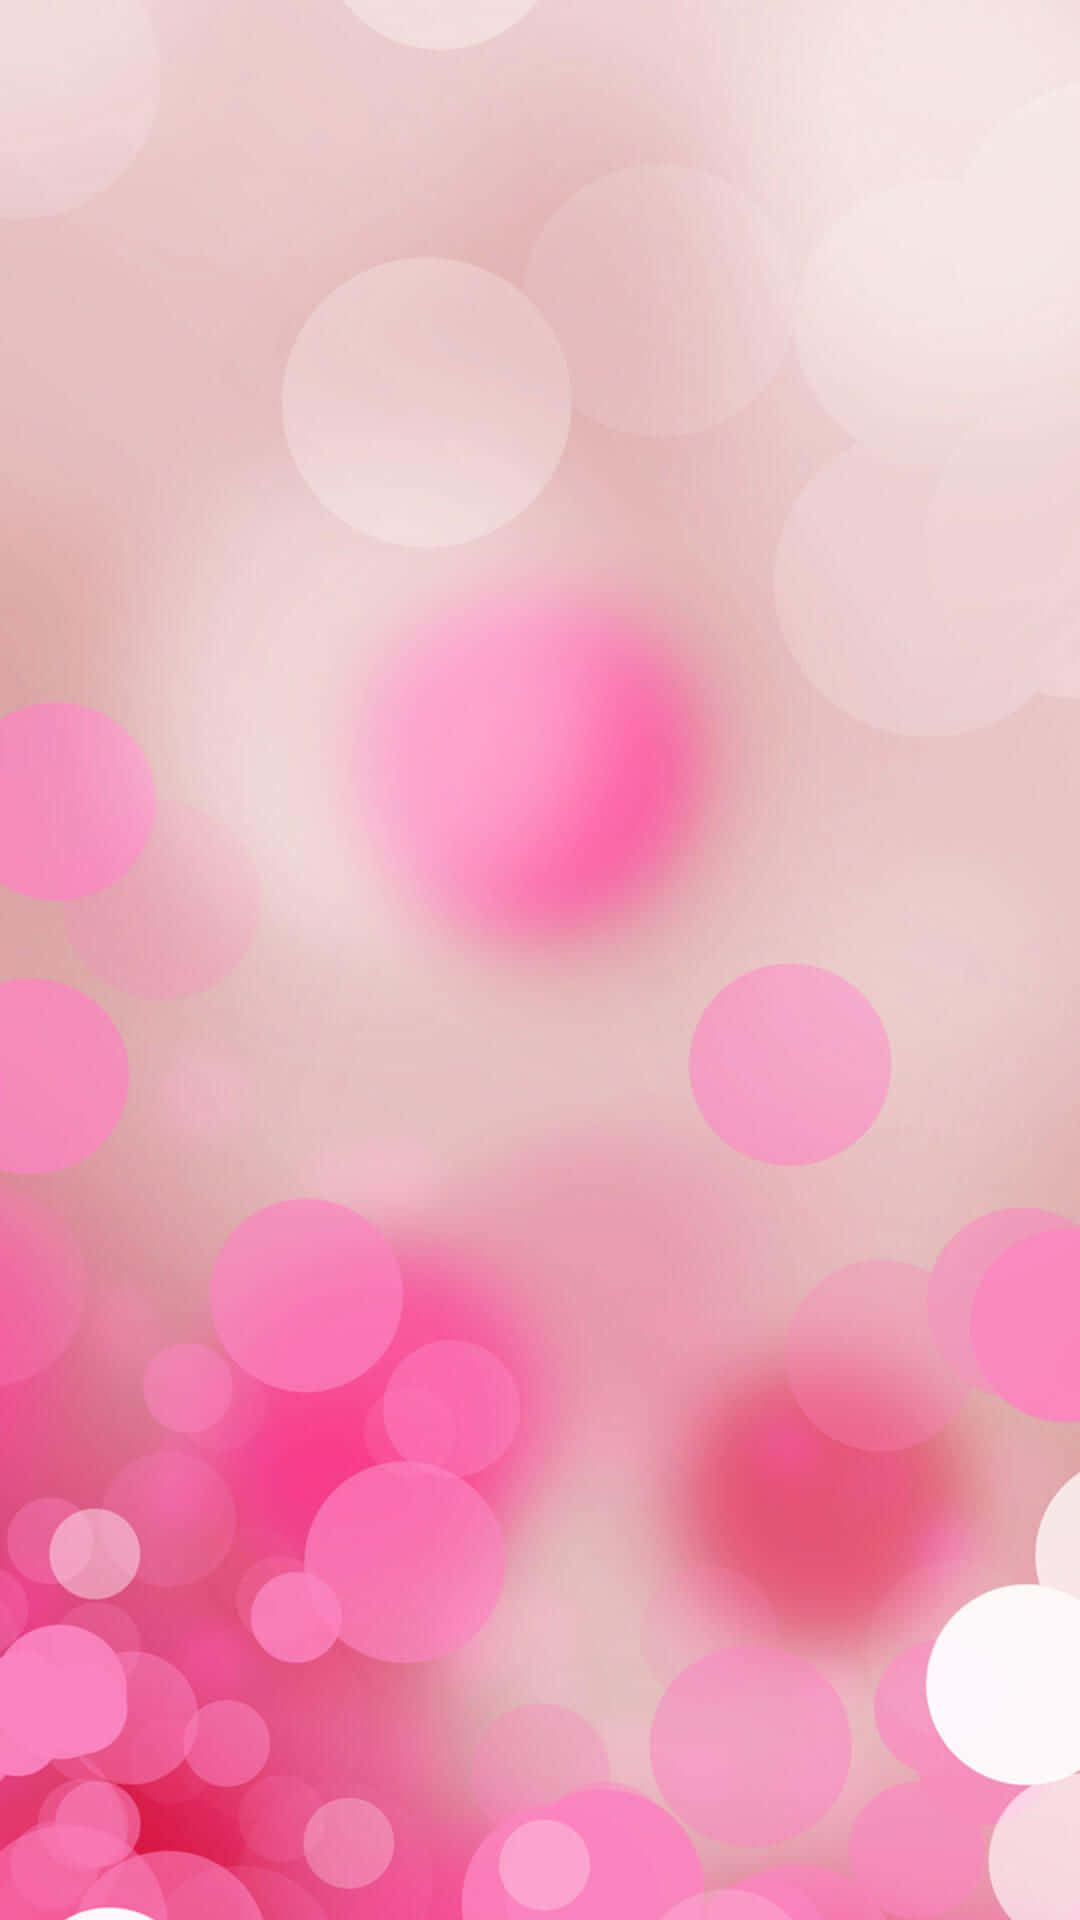 Caption: Elegant Pink iPhone Background